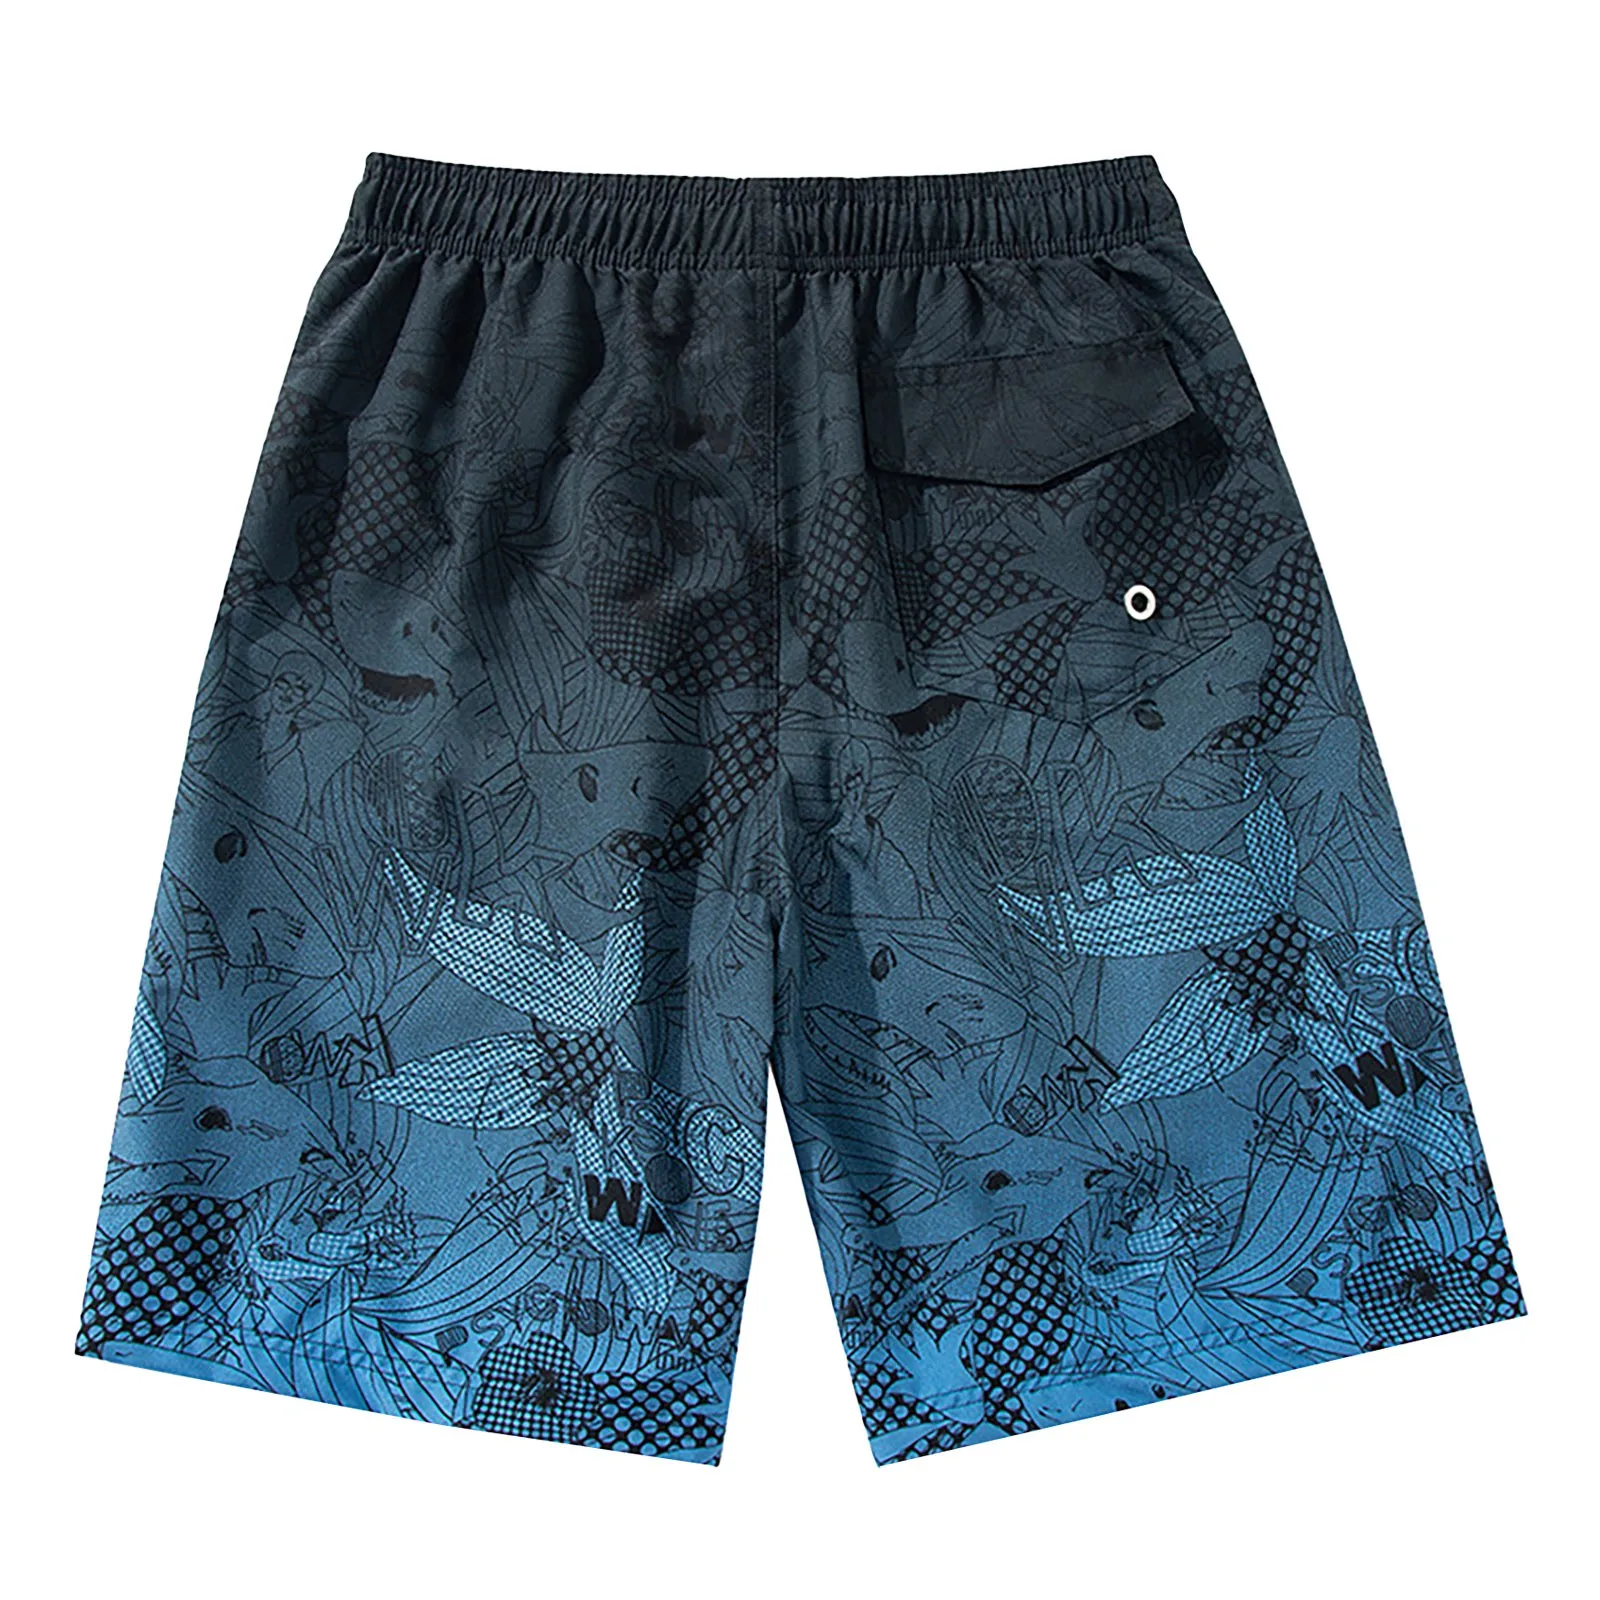 Мъжки бански с мрежесто покритие, шорти за плуване, летни плажни шорти в синьо